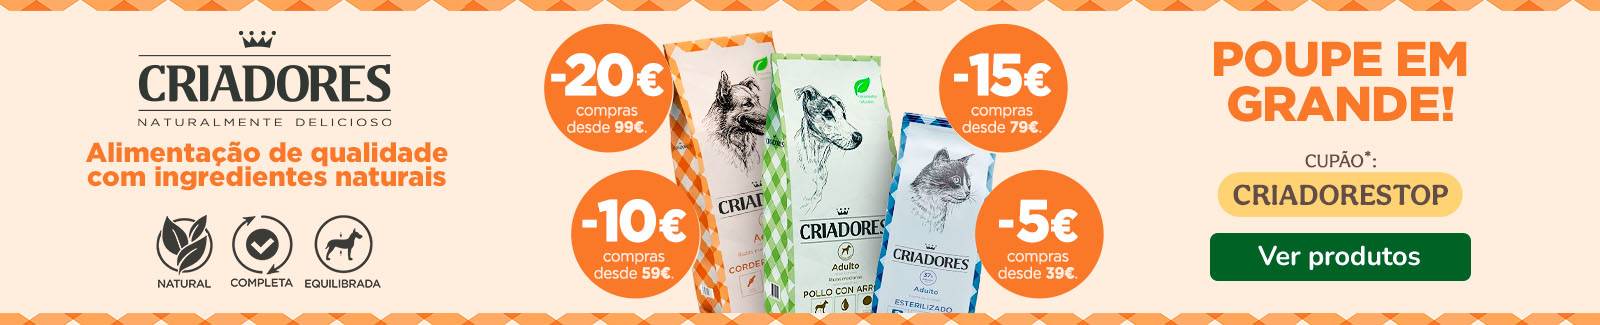 Grandes descontos nas rações Criadores para cães e gatos até 20€ com o cupão CRIADORESTOP!